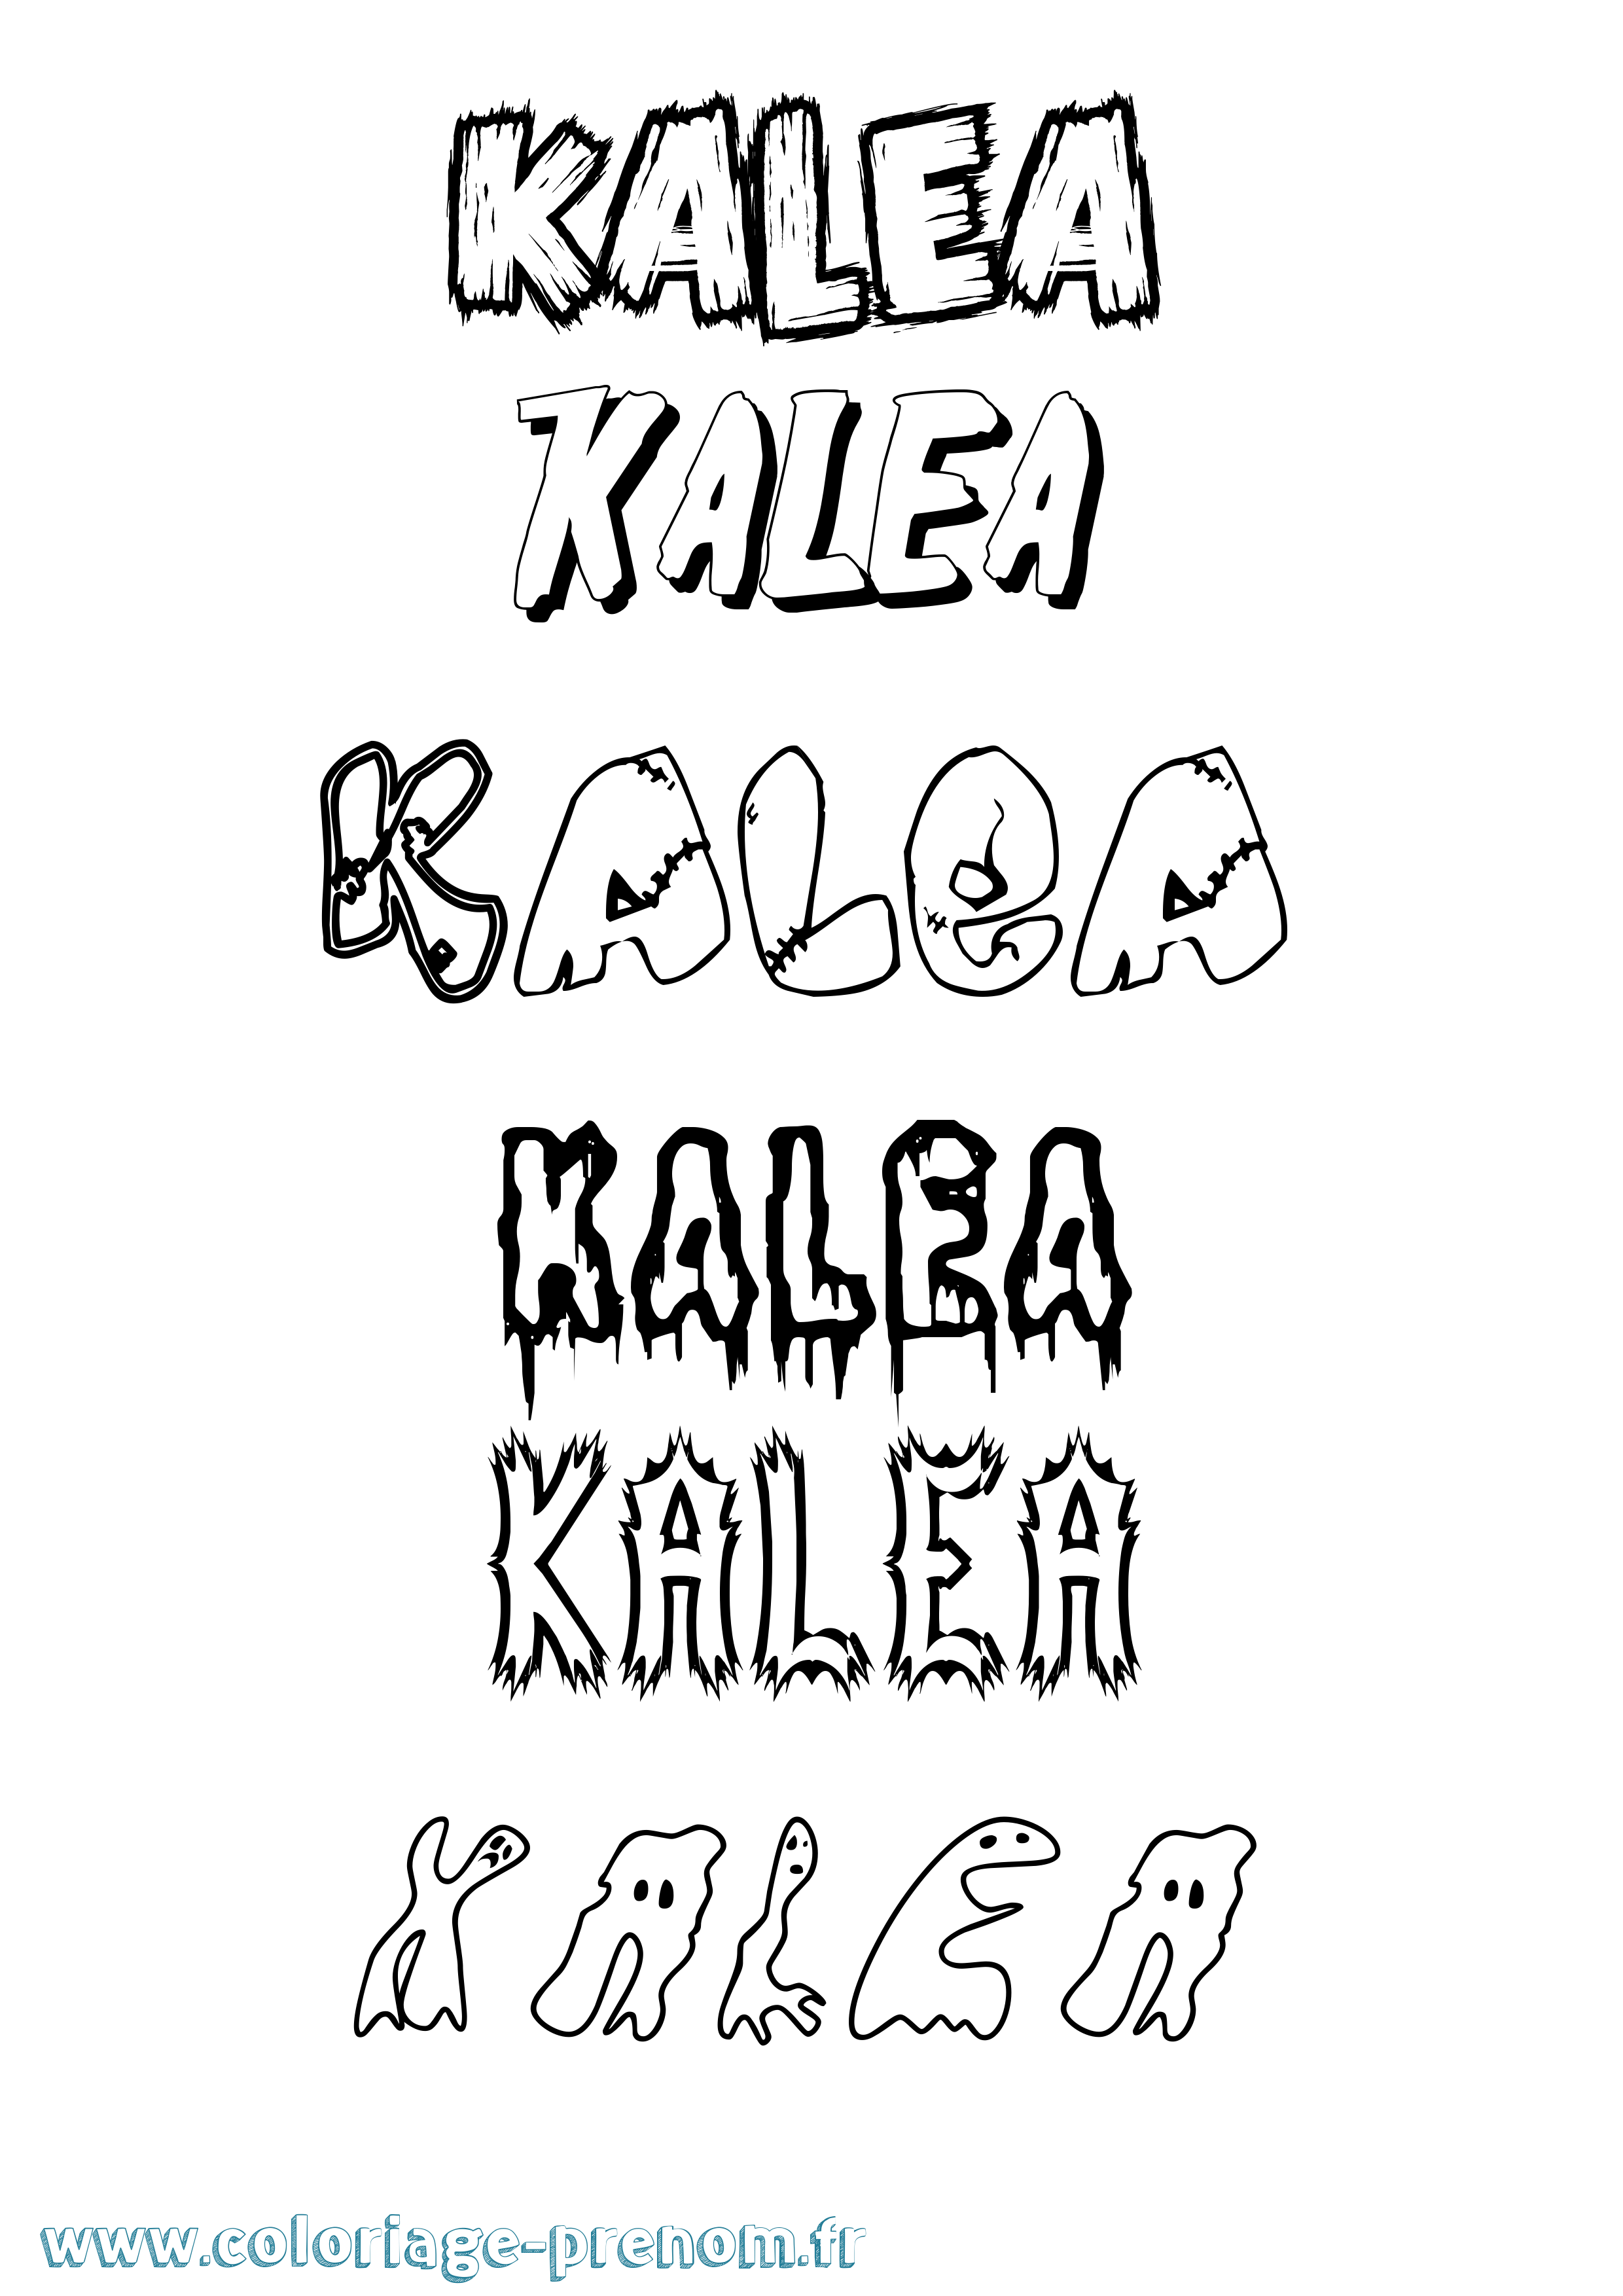 Coloriage prénom Kalea Frisson